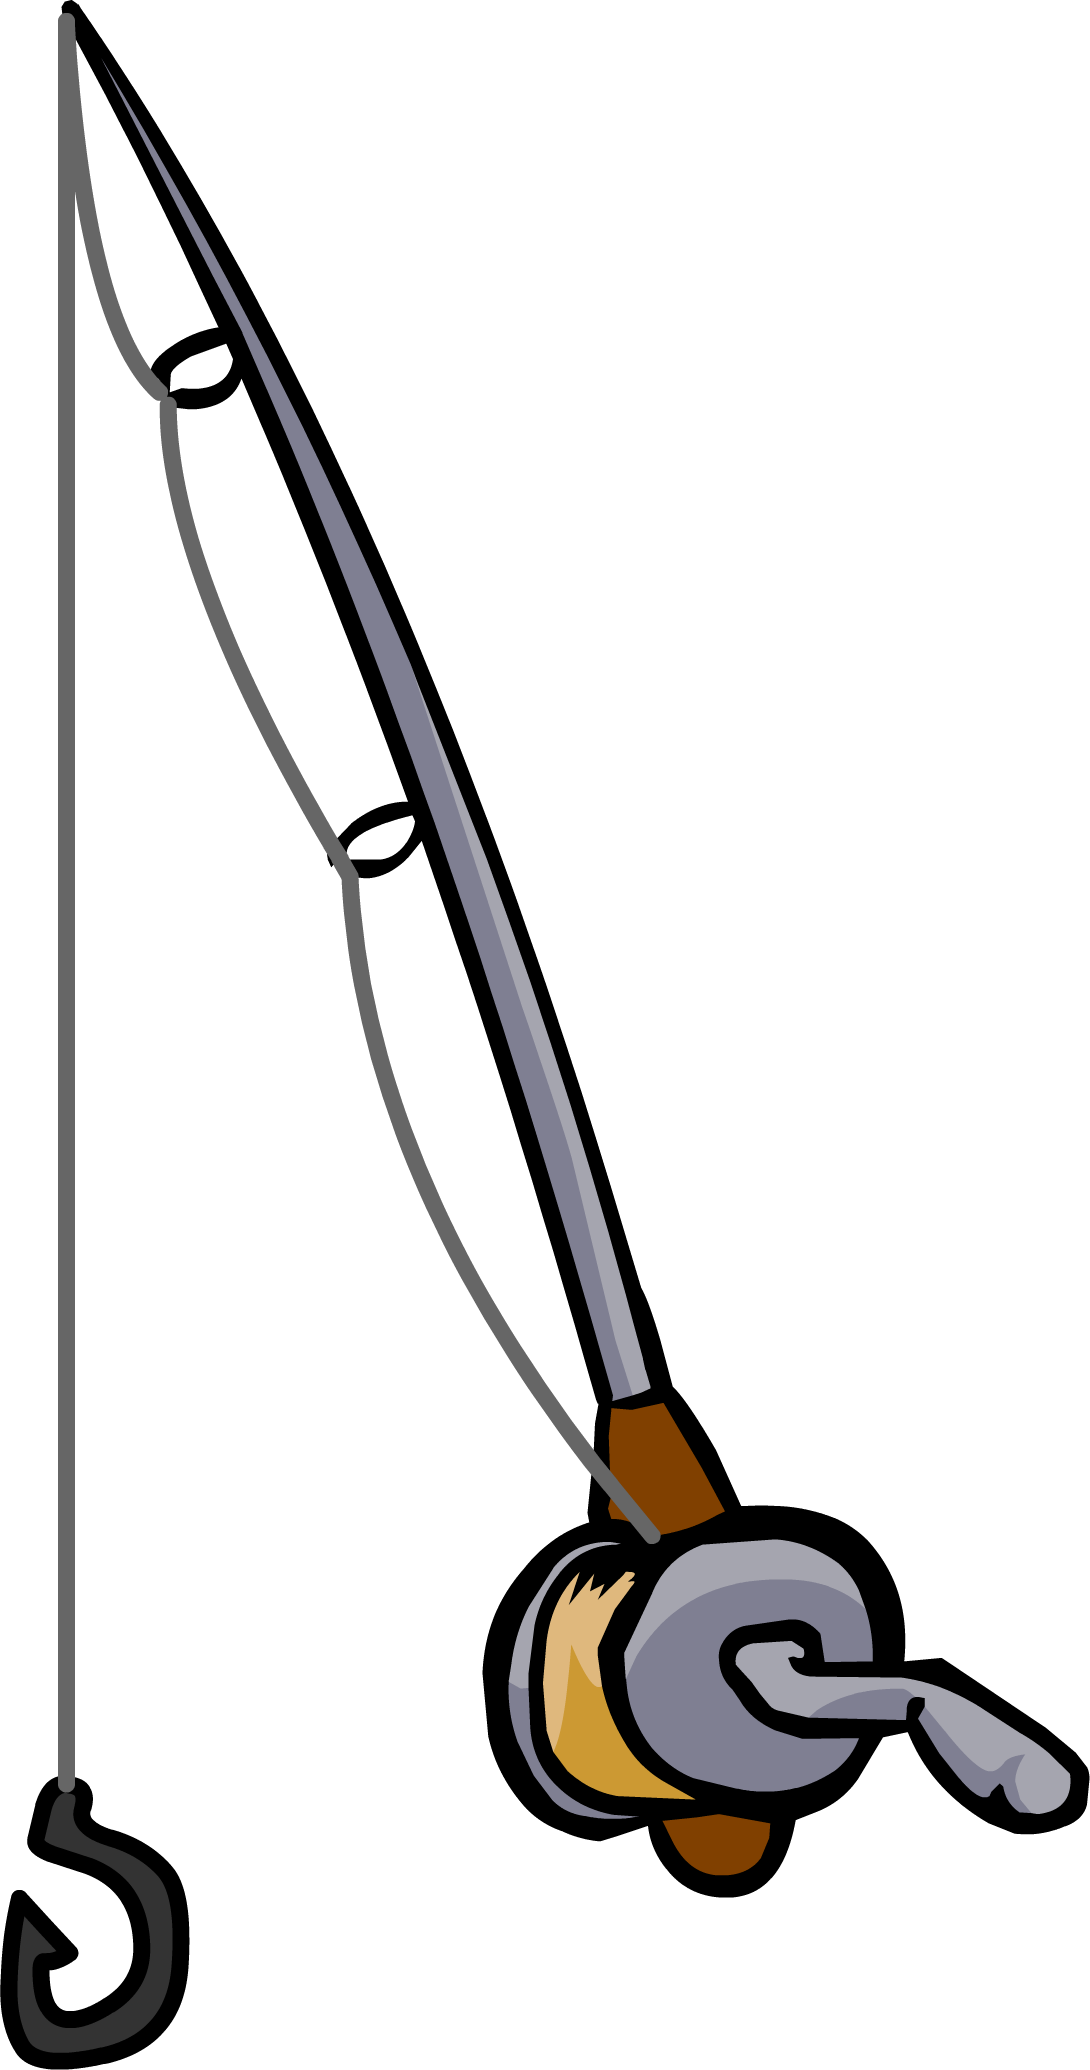 Fishing Rod - Club Penguin Fishing Rod (1090x2070)